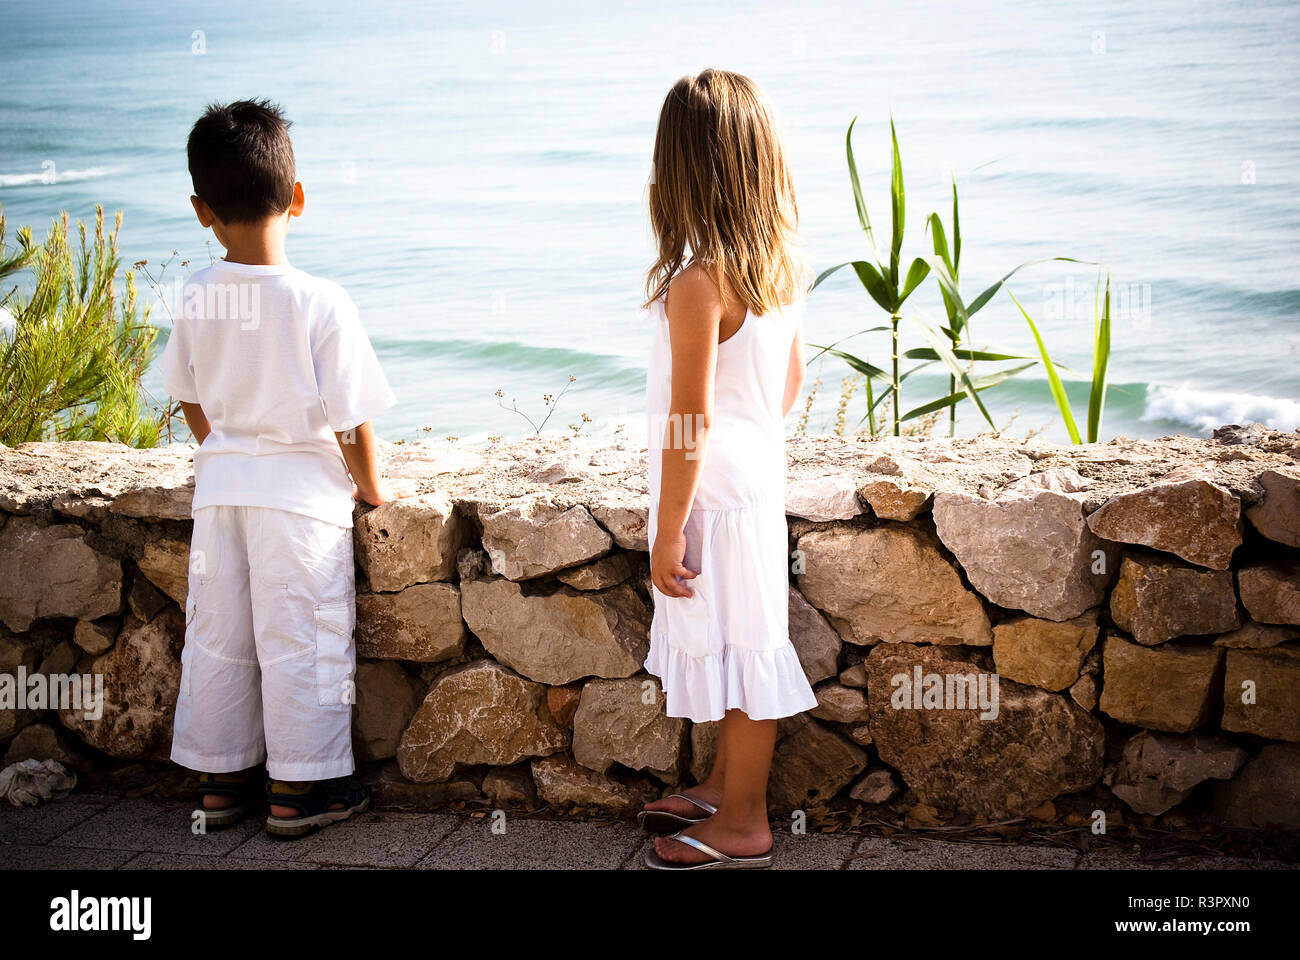 Dos niños vestidos de blanco mirando el mar Fotografía de stock Alamy